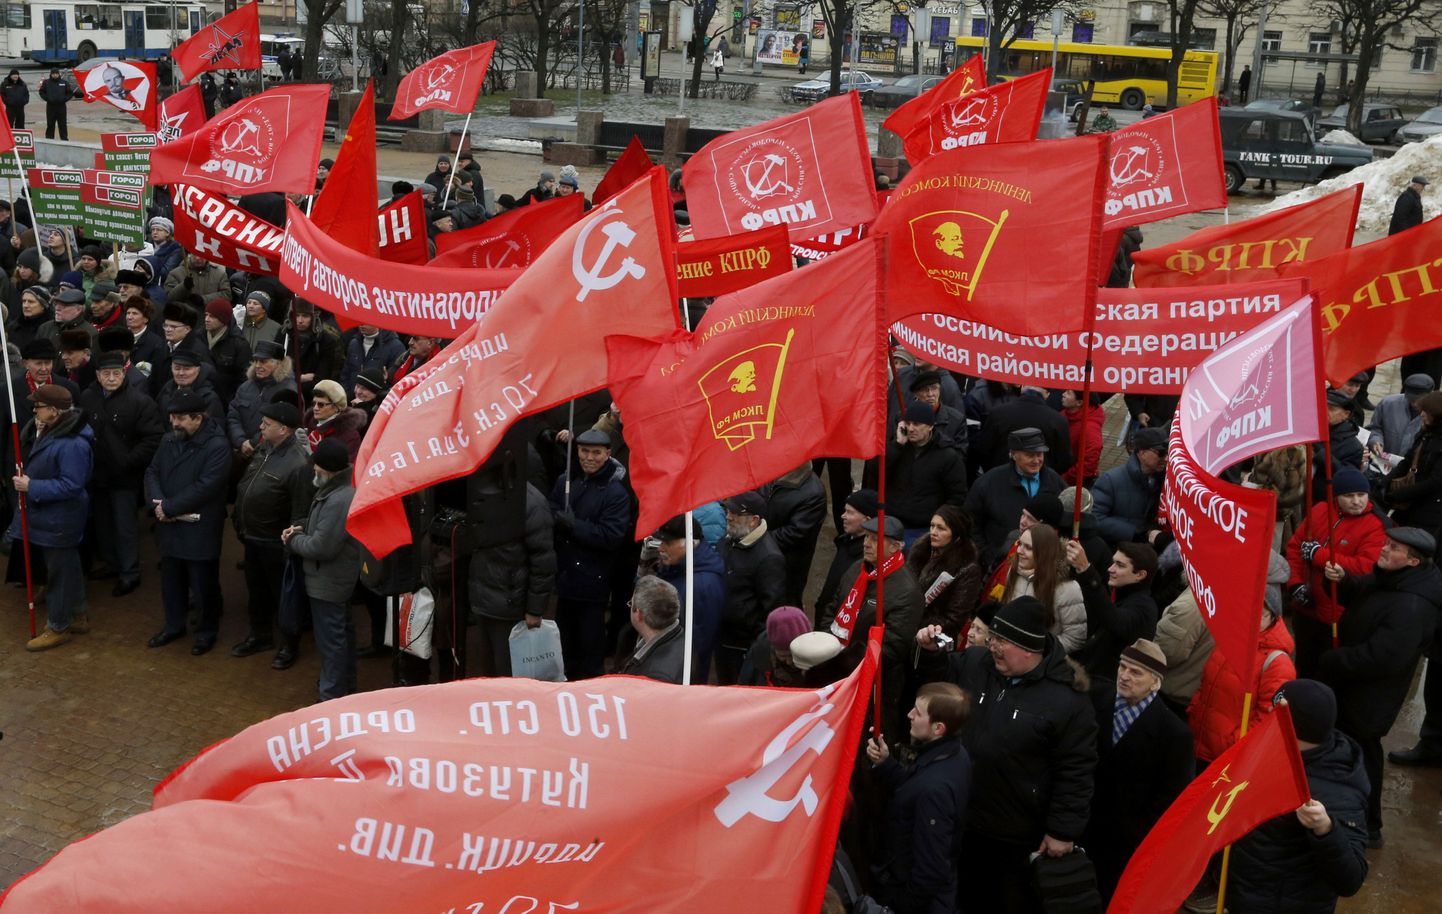 Venemaa kommunistliku partei liikmed punalippude ja loosungitega